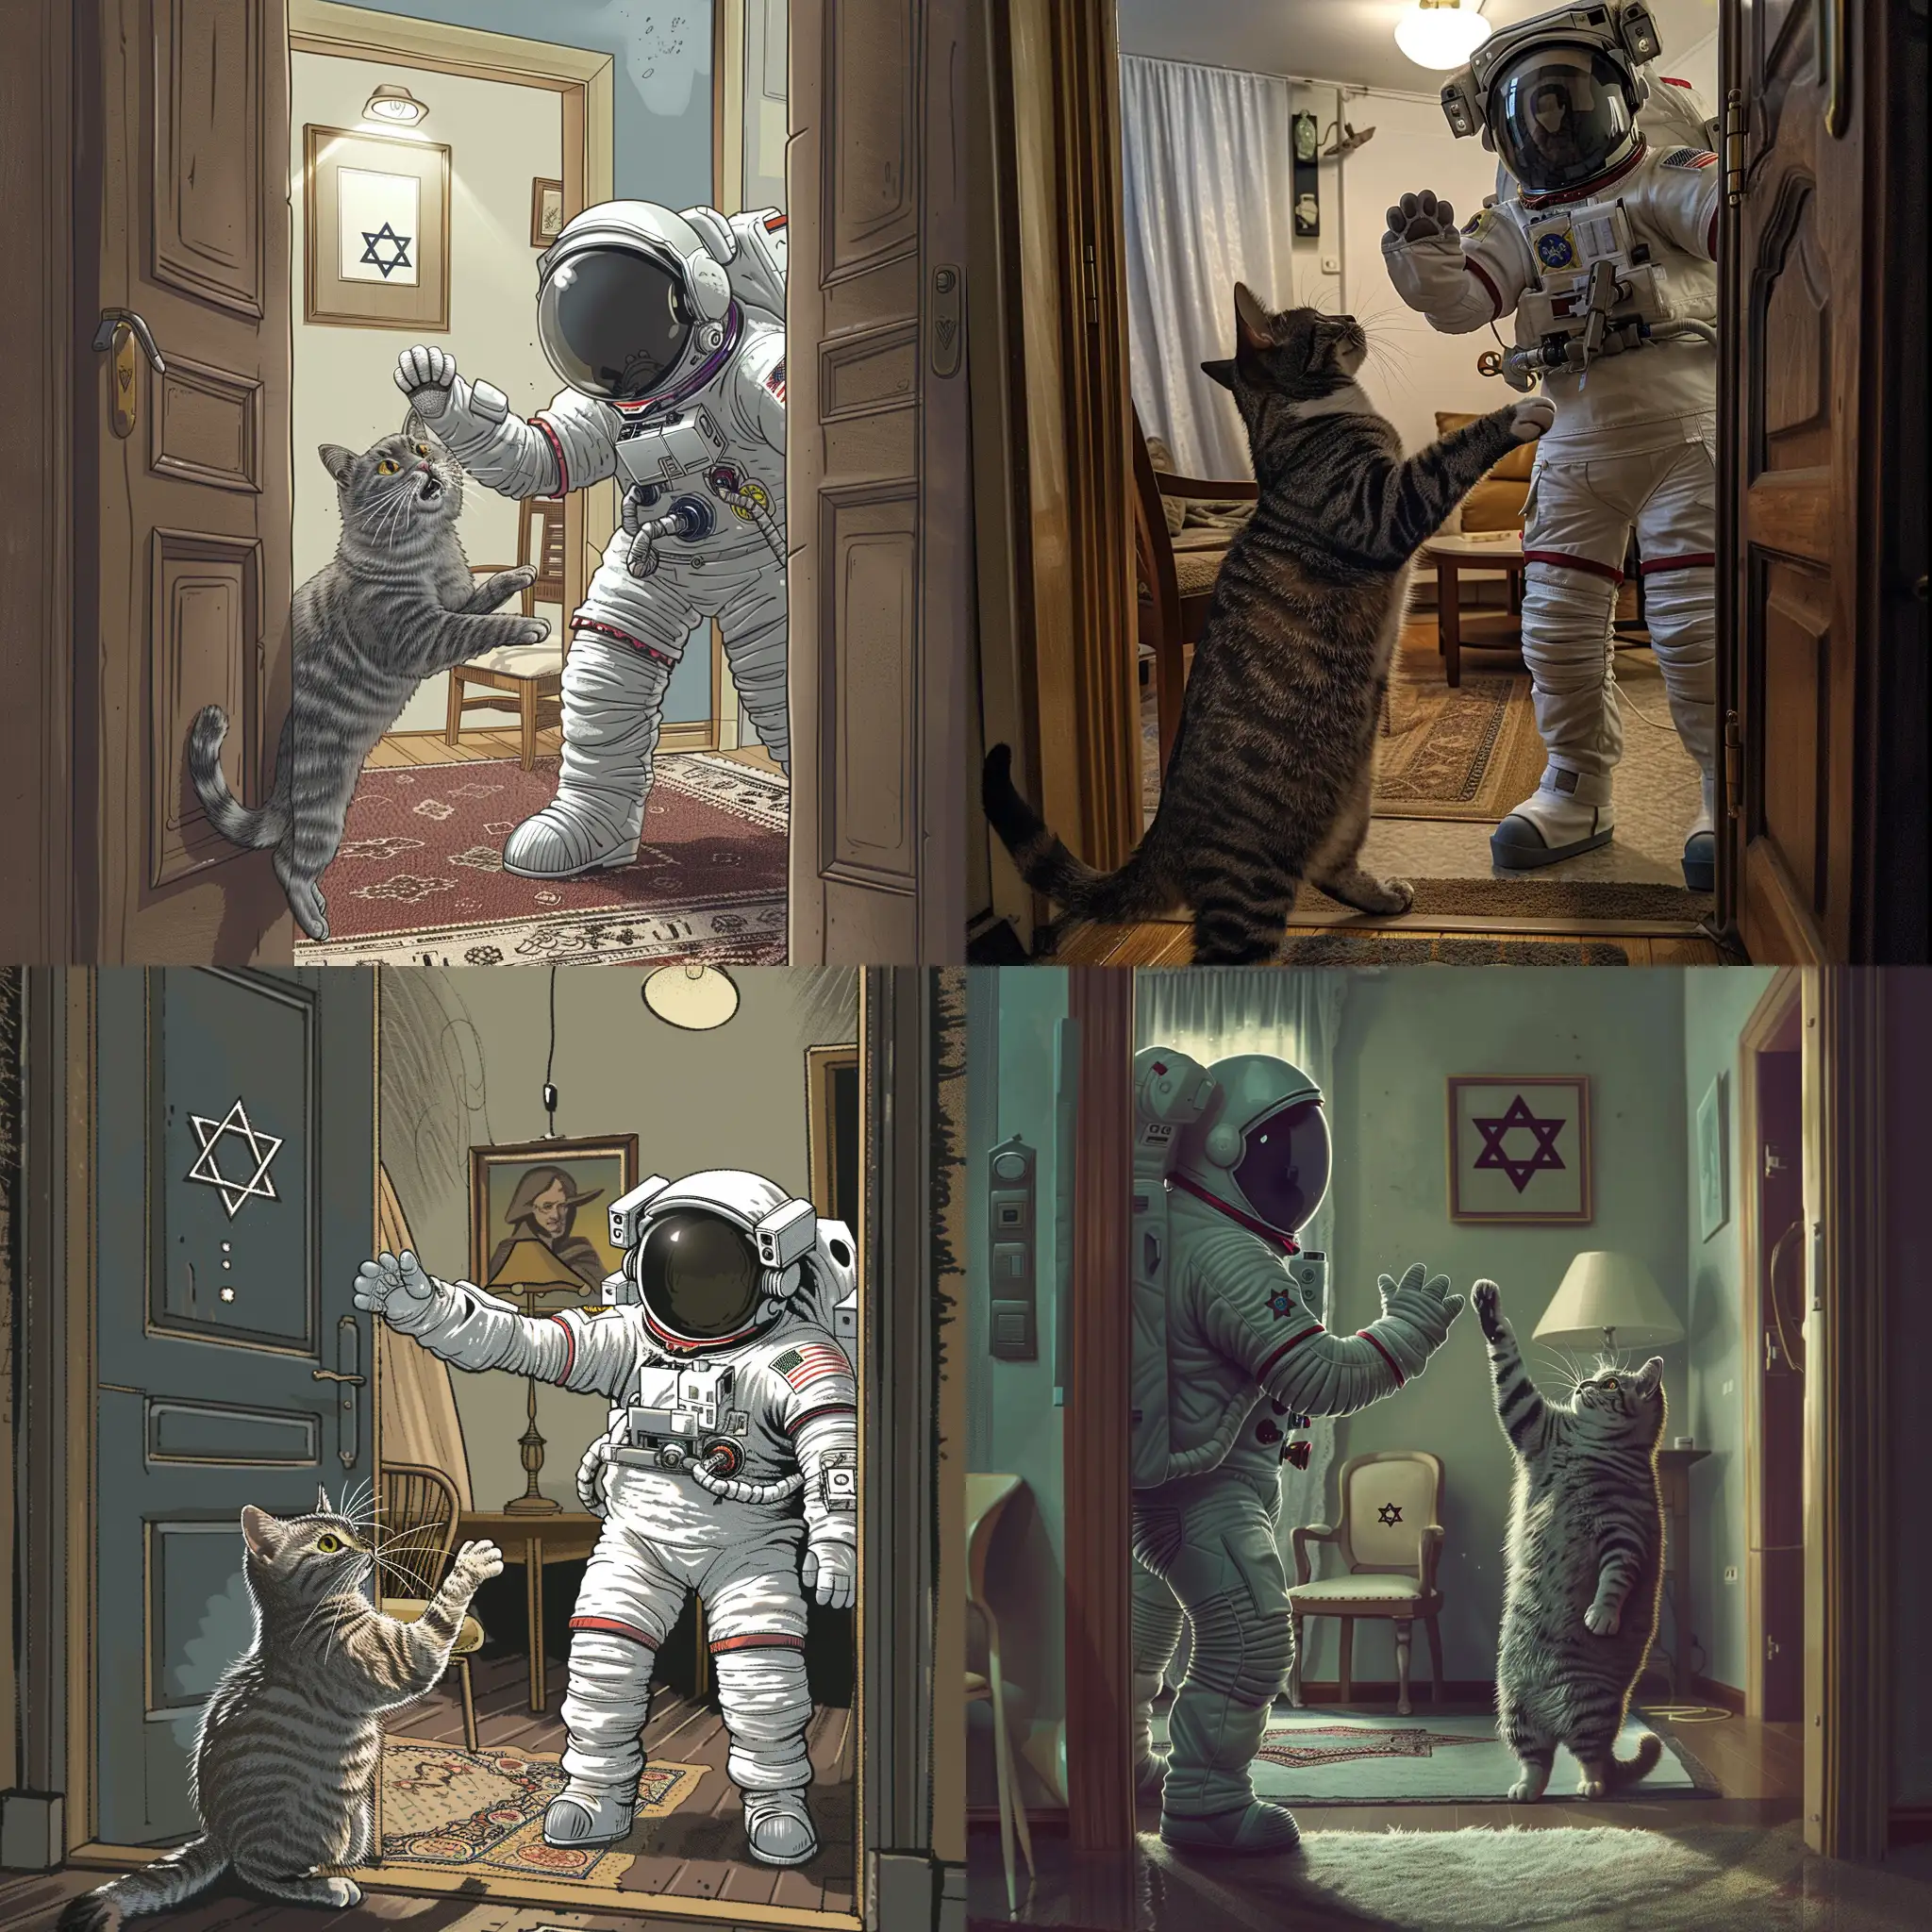 Frightened-Gray-Cat-Meets-Israeli-Astronaut-in-Apartment-Doorway